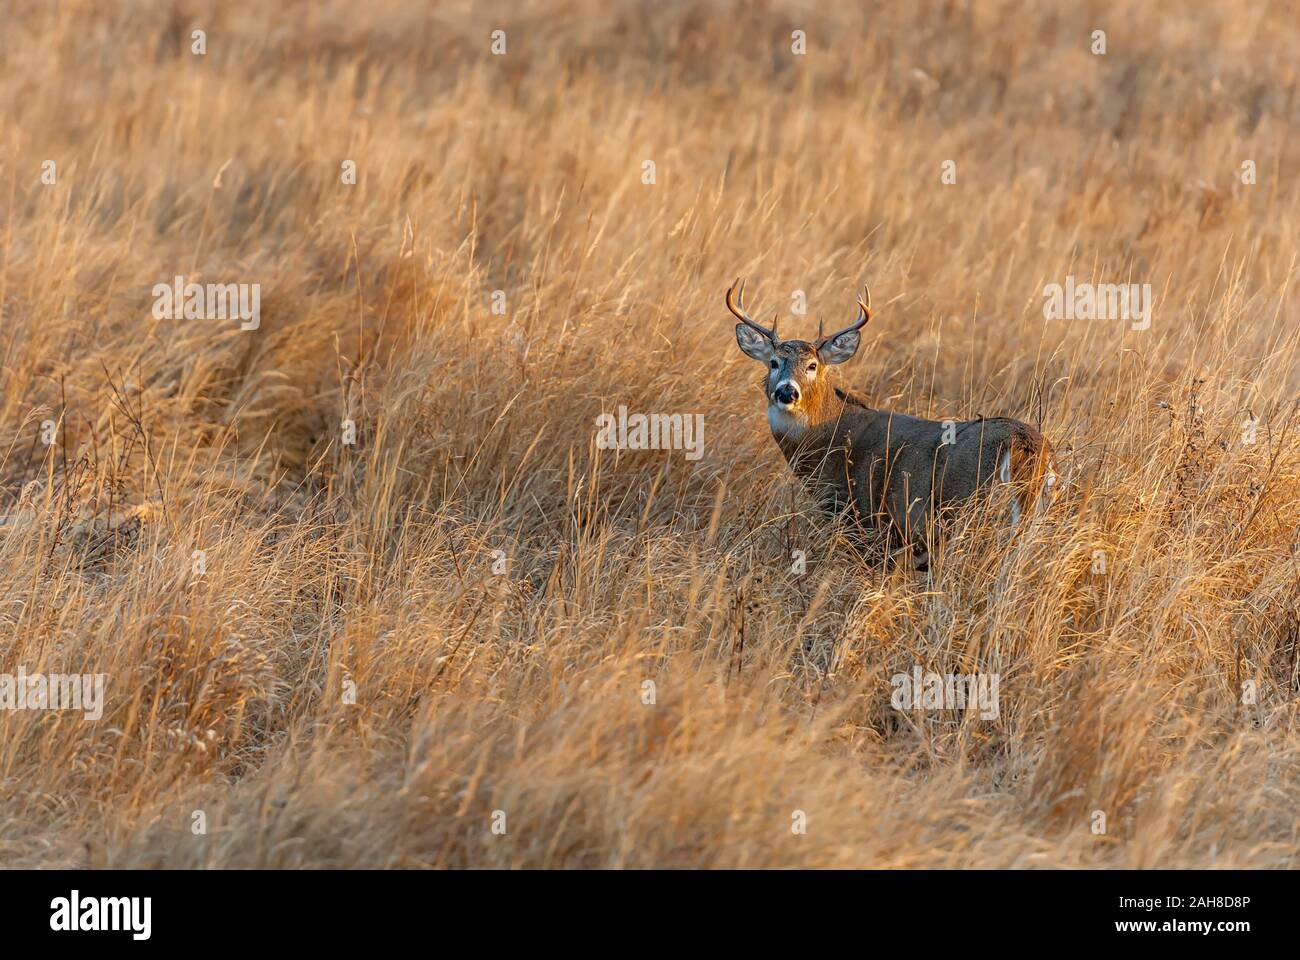 Un magnifique cerf, debout au milieu d'un terrain couvert d'herbe Banque D'Images